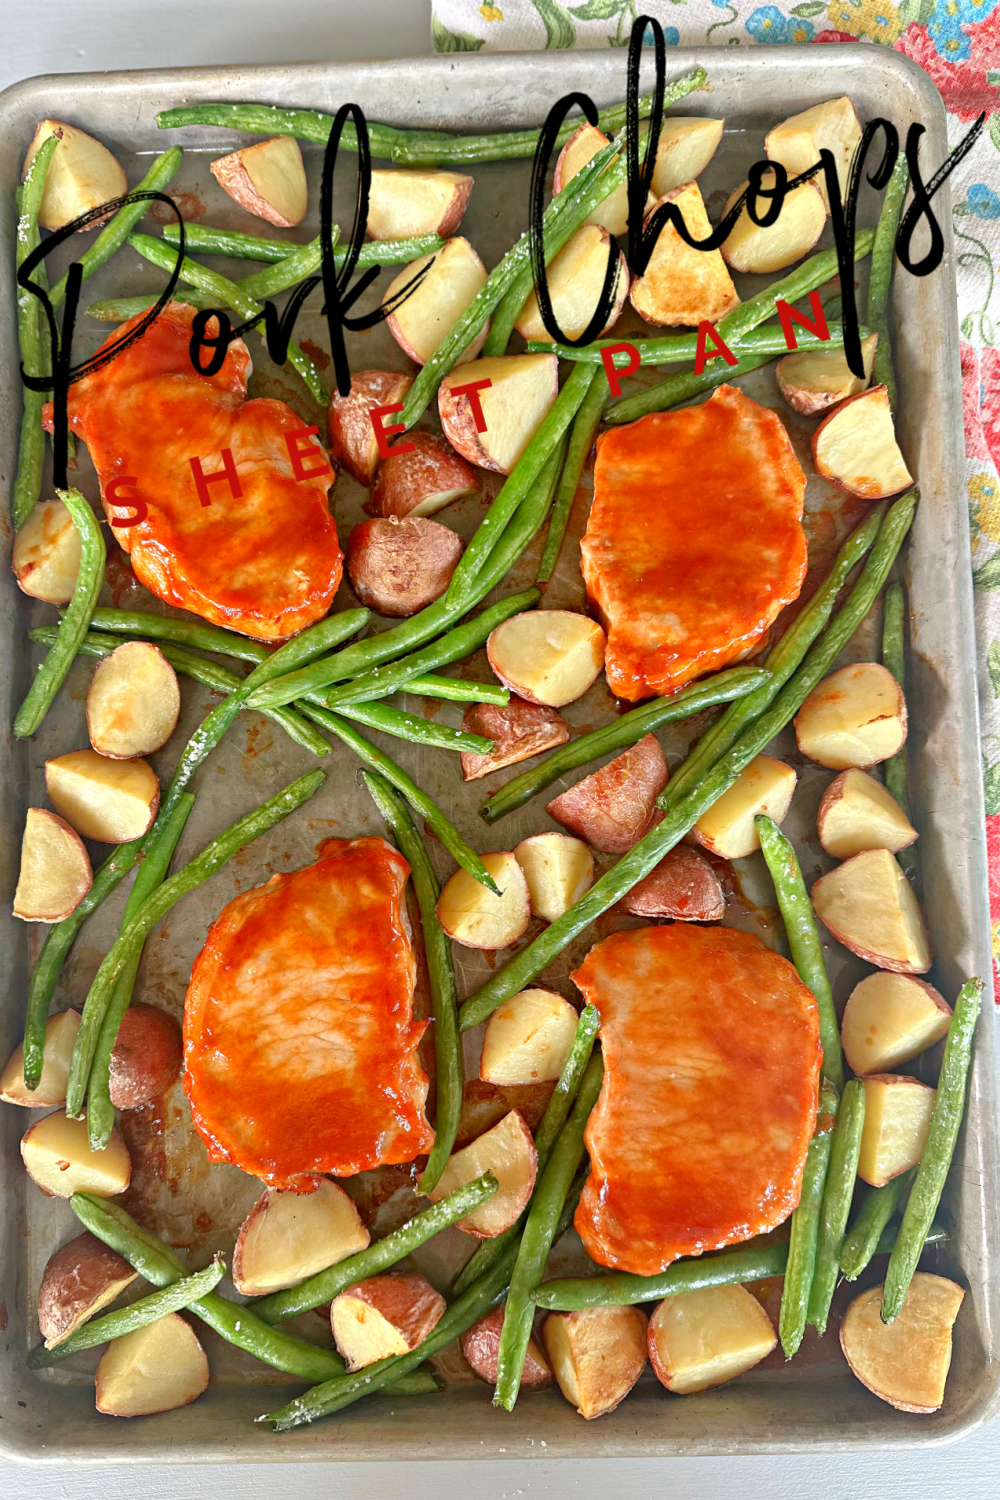 Sheet Pan Pork Chops #pork #porkchops #onepanmeals #sheetpandinners #easydinnerrecipe #dinner #familydinner #weeknightdinner